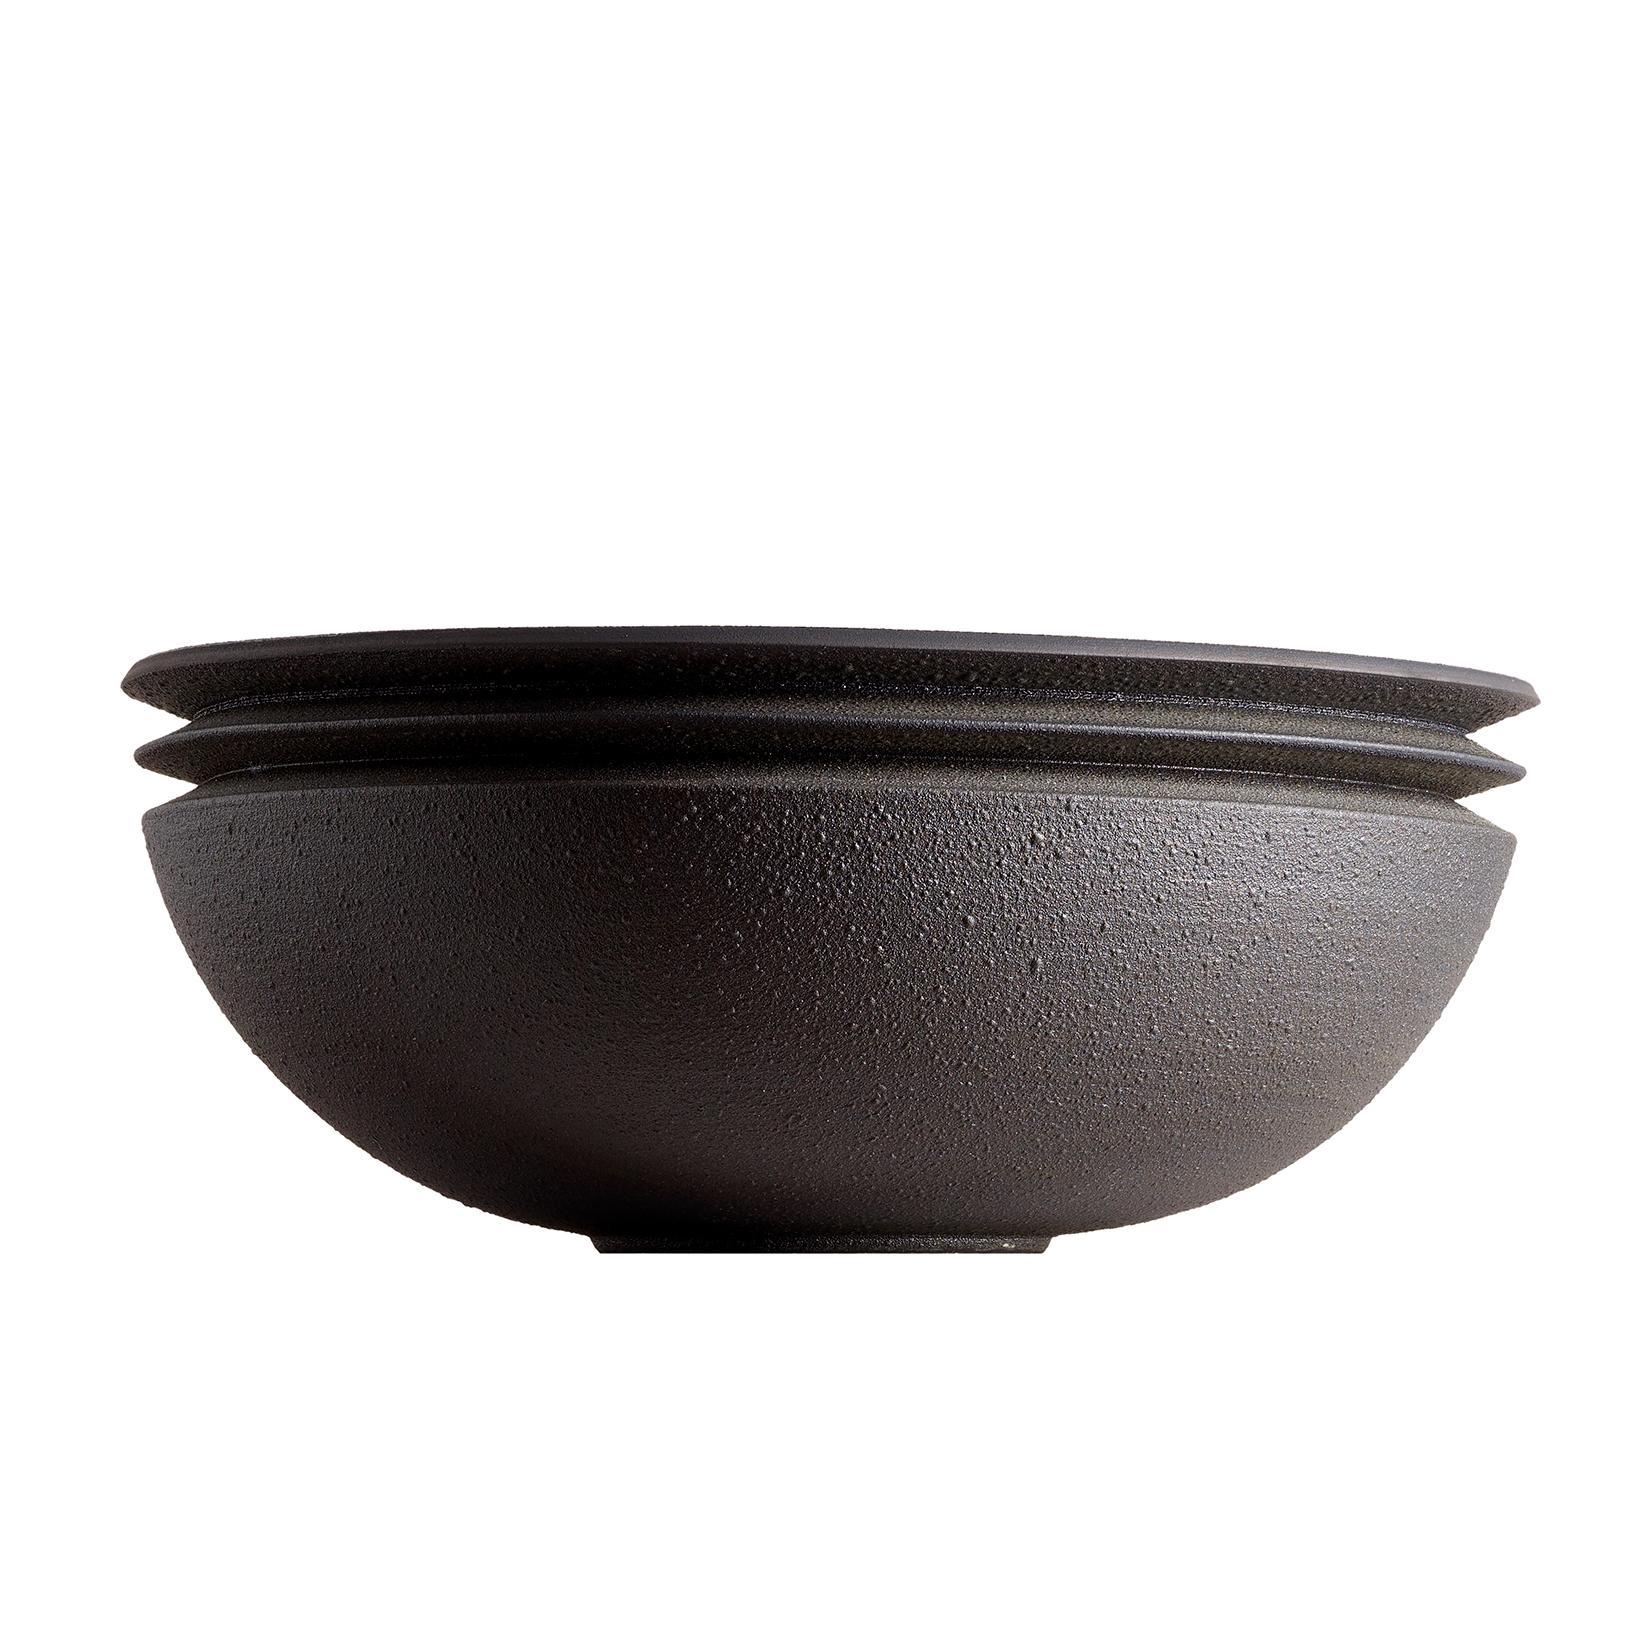 Twilight, Vessel N, Bowl, Slip Cast Ceramic, N/O Vessels Collection For Sale